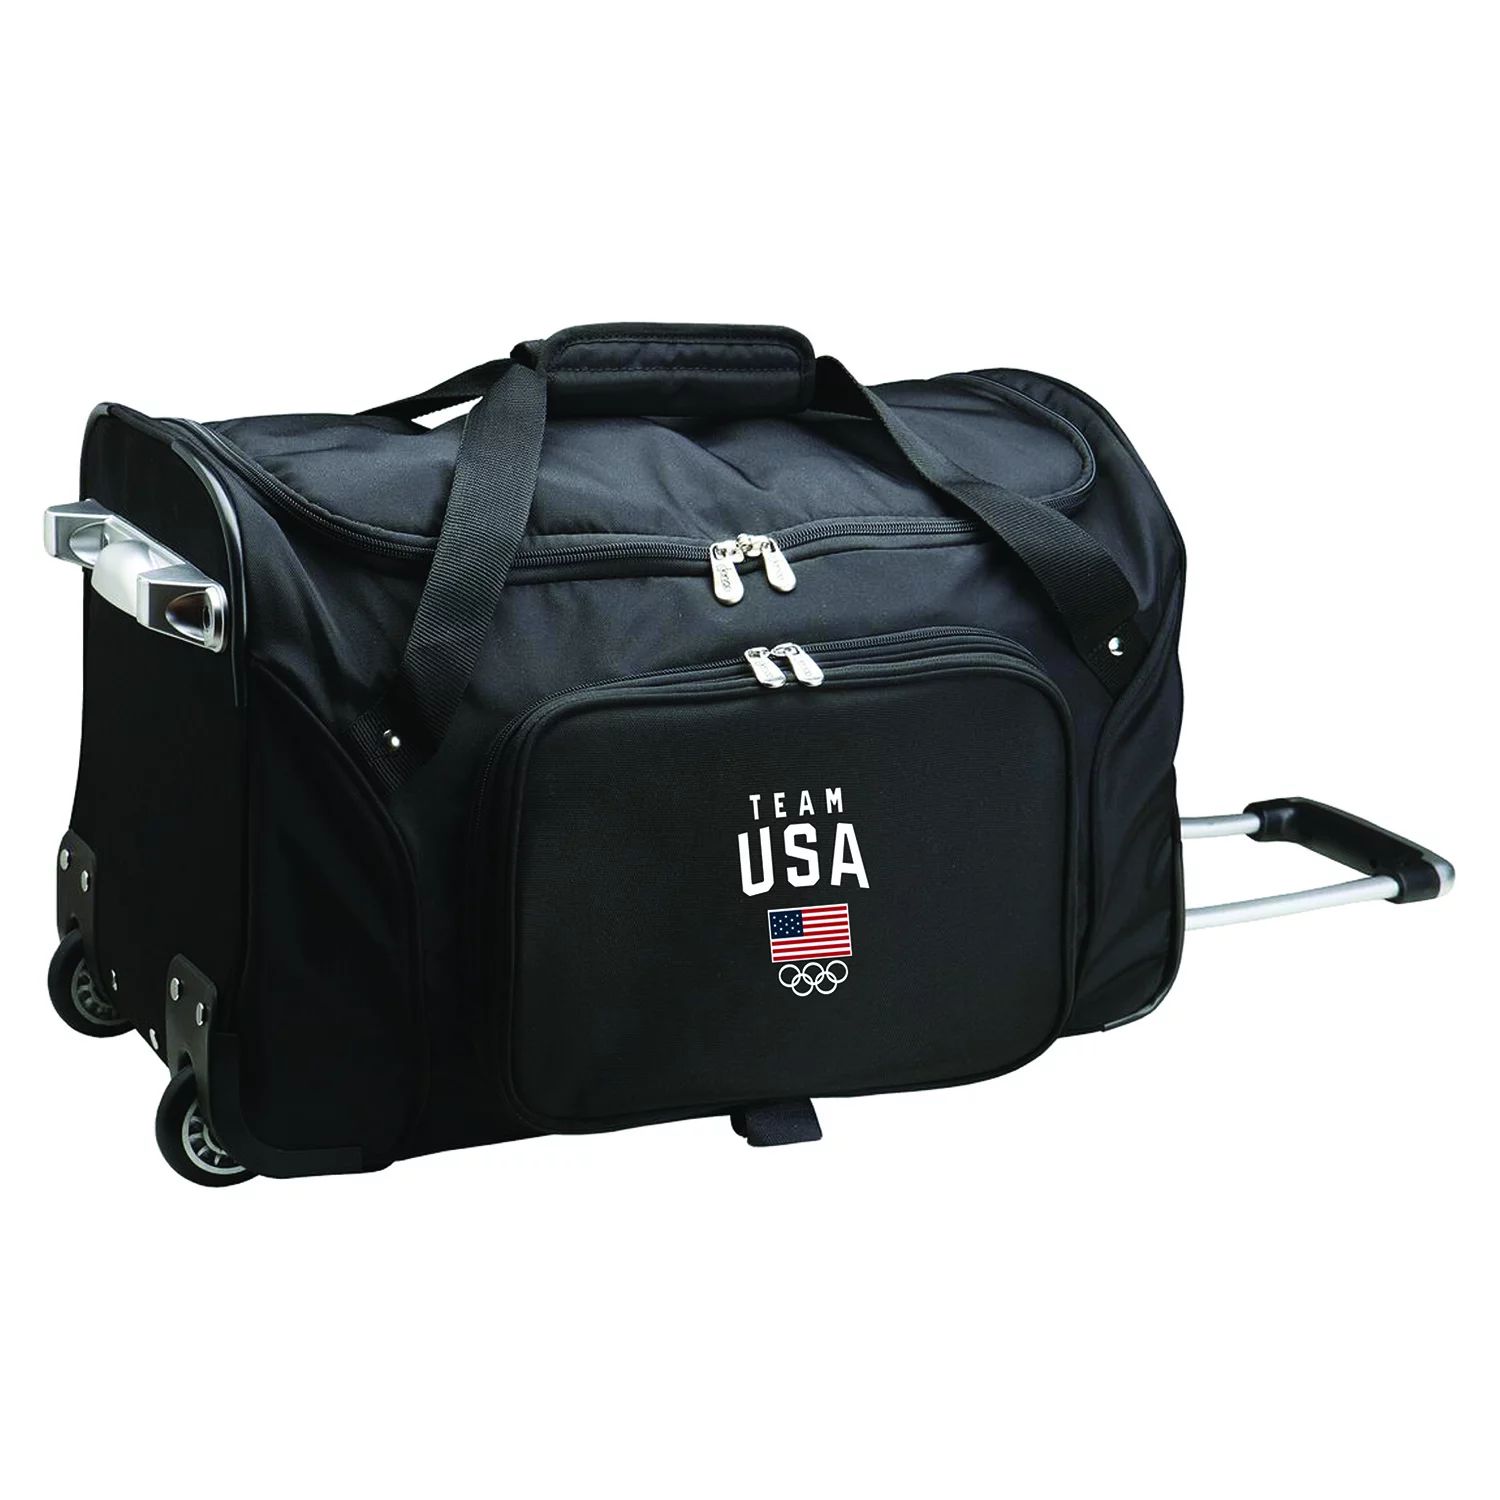 Спортивная сумка Denco на колесиках для олимпийской сборной США, 21 дюйм Denco цена и фото